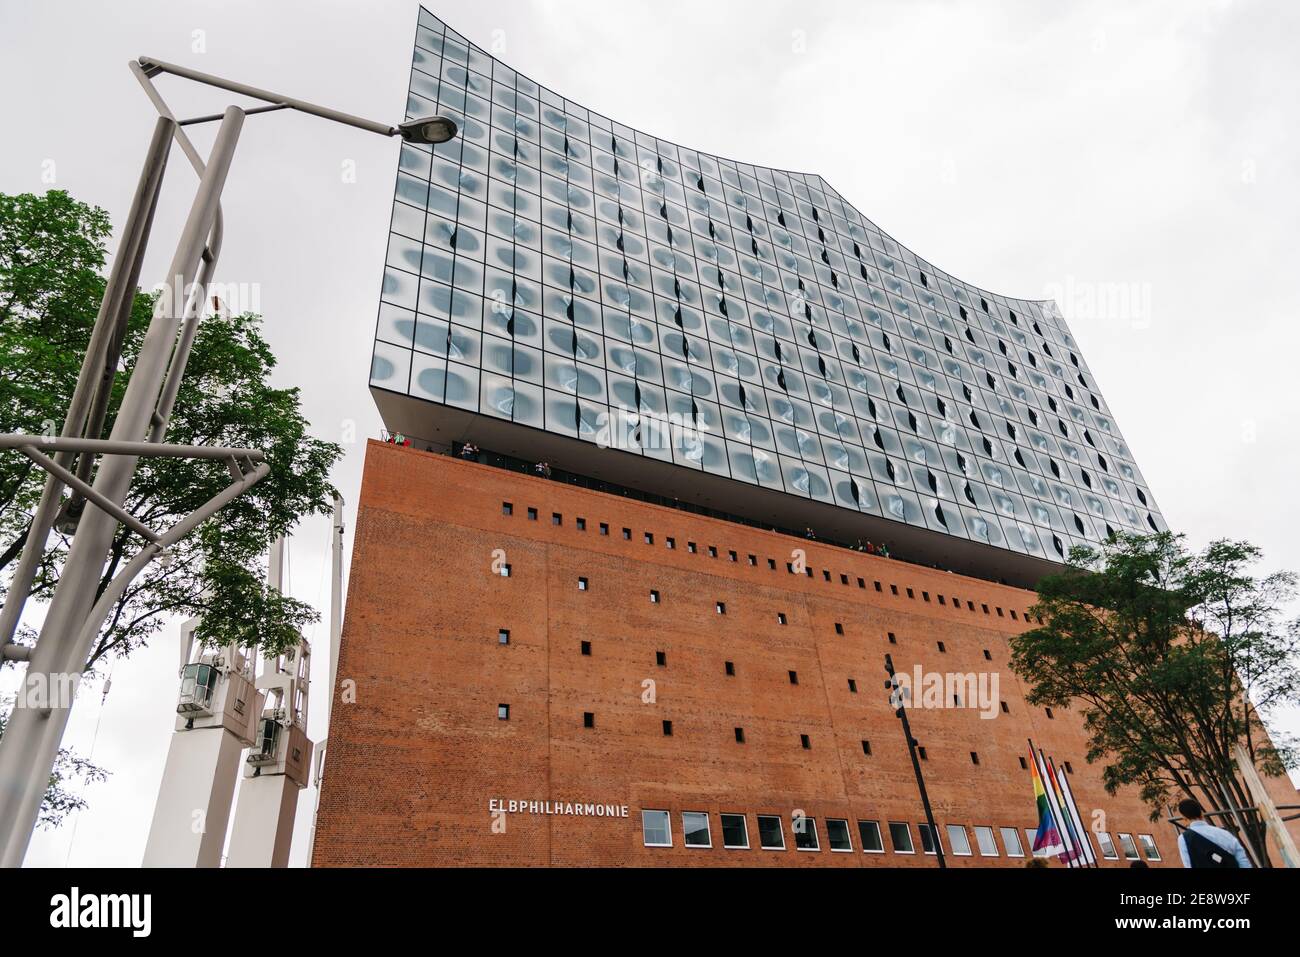 Hamburgo, Alemania - 4 de agosto de 2019: Elbphilharmonie o Elbe Philharmonic Hall en el barrio HafenCity. Diseñado por la firma de arquitectura Herzog y de Meu Foto de stock